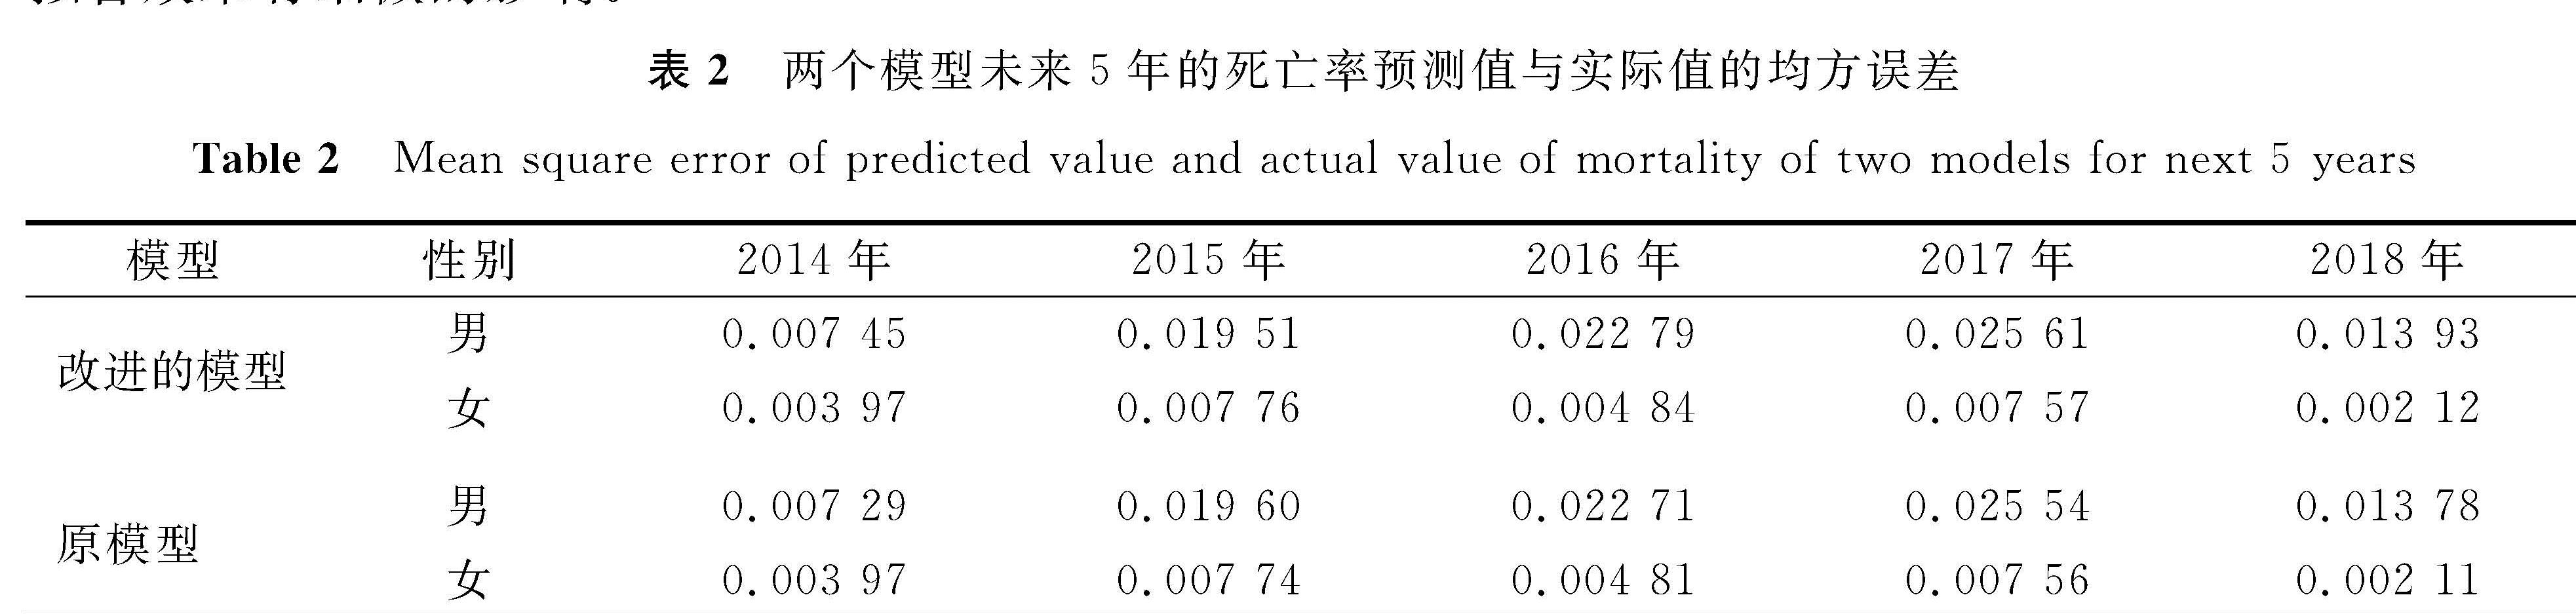 表2 两个模型未来5年的死亡率预测值与实际值的均方误差<br/>Table 2 Mean square error of predicted value and actual value of mortality of two models for next 5 years